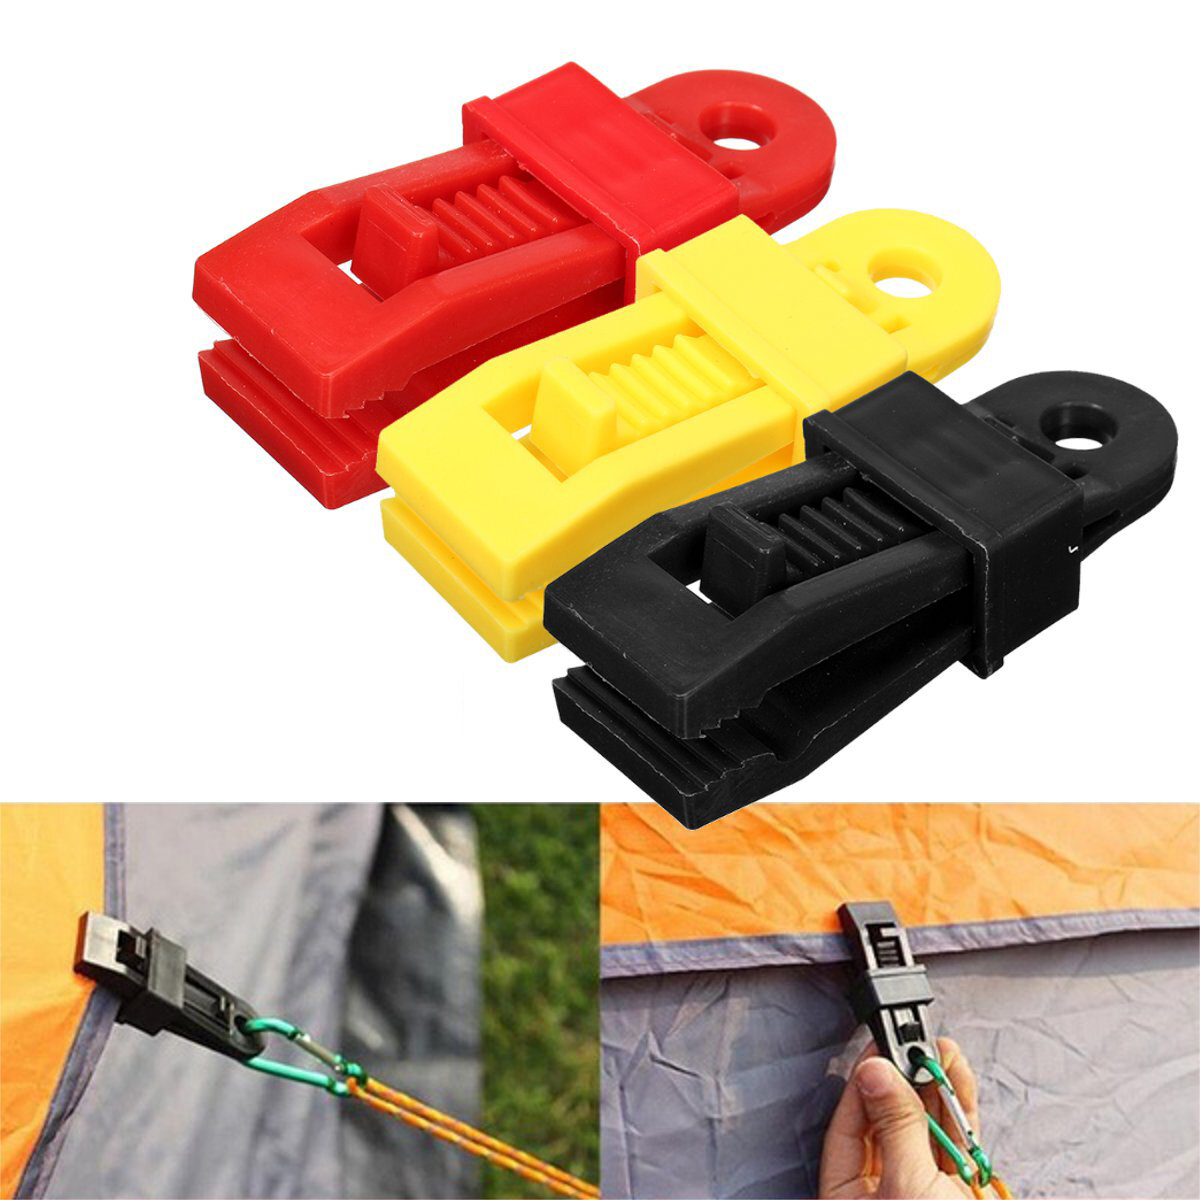 24 Пластиковые многоразовые зажимы для палатки, крепеж для палатки на открытом воздухе - желтый / красный / черный